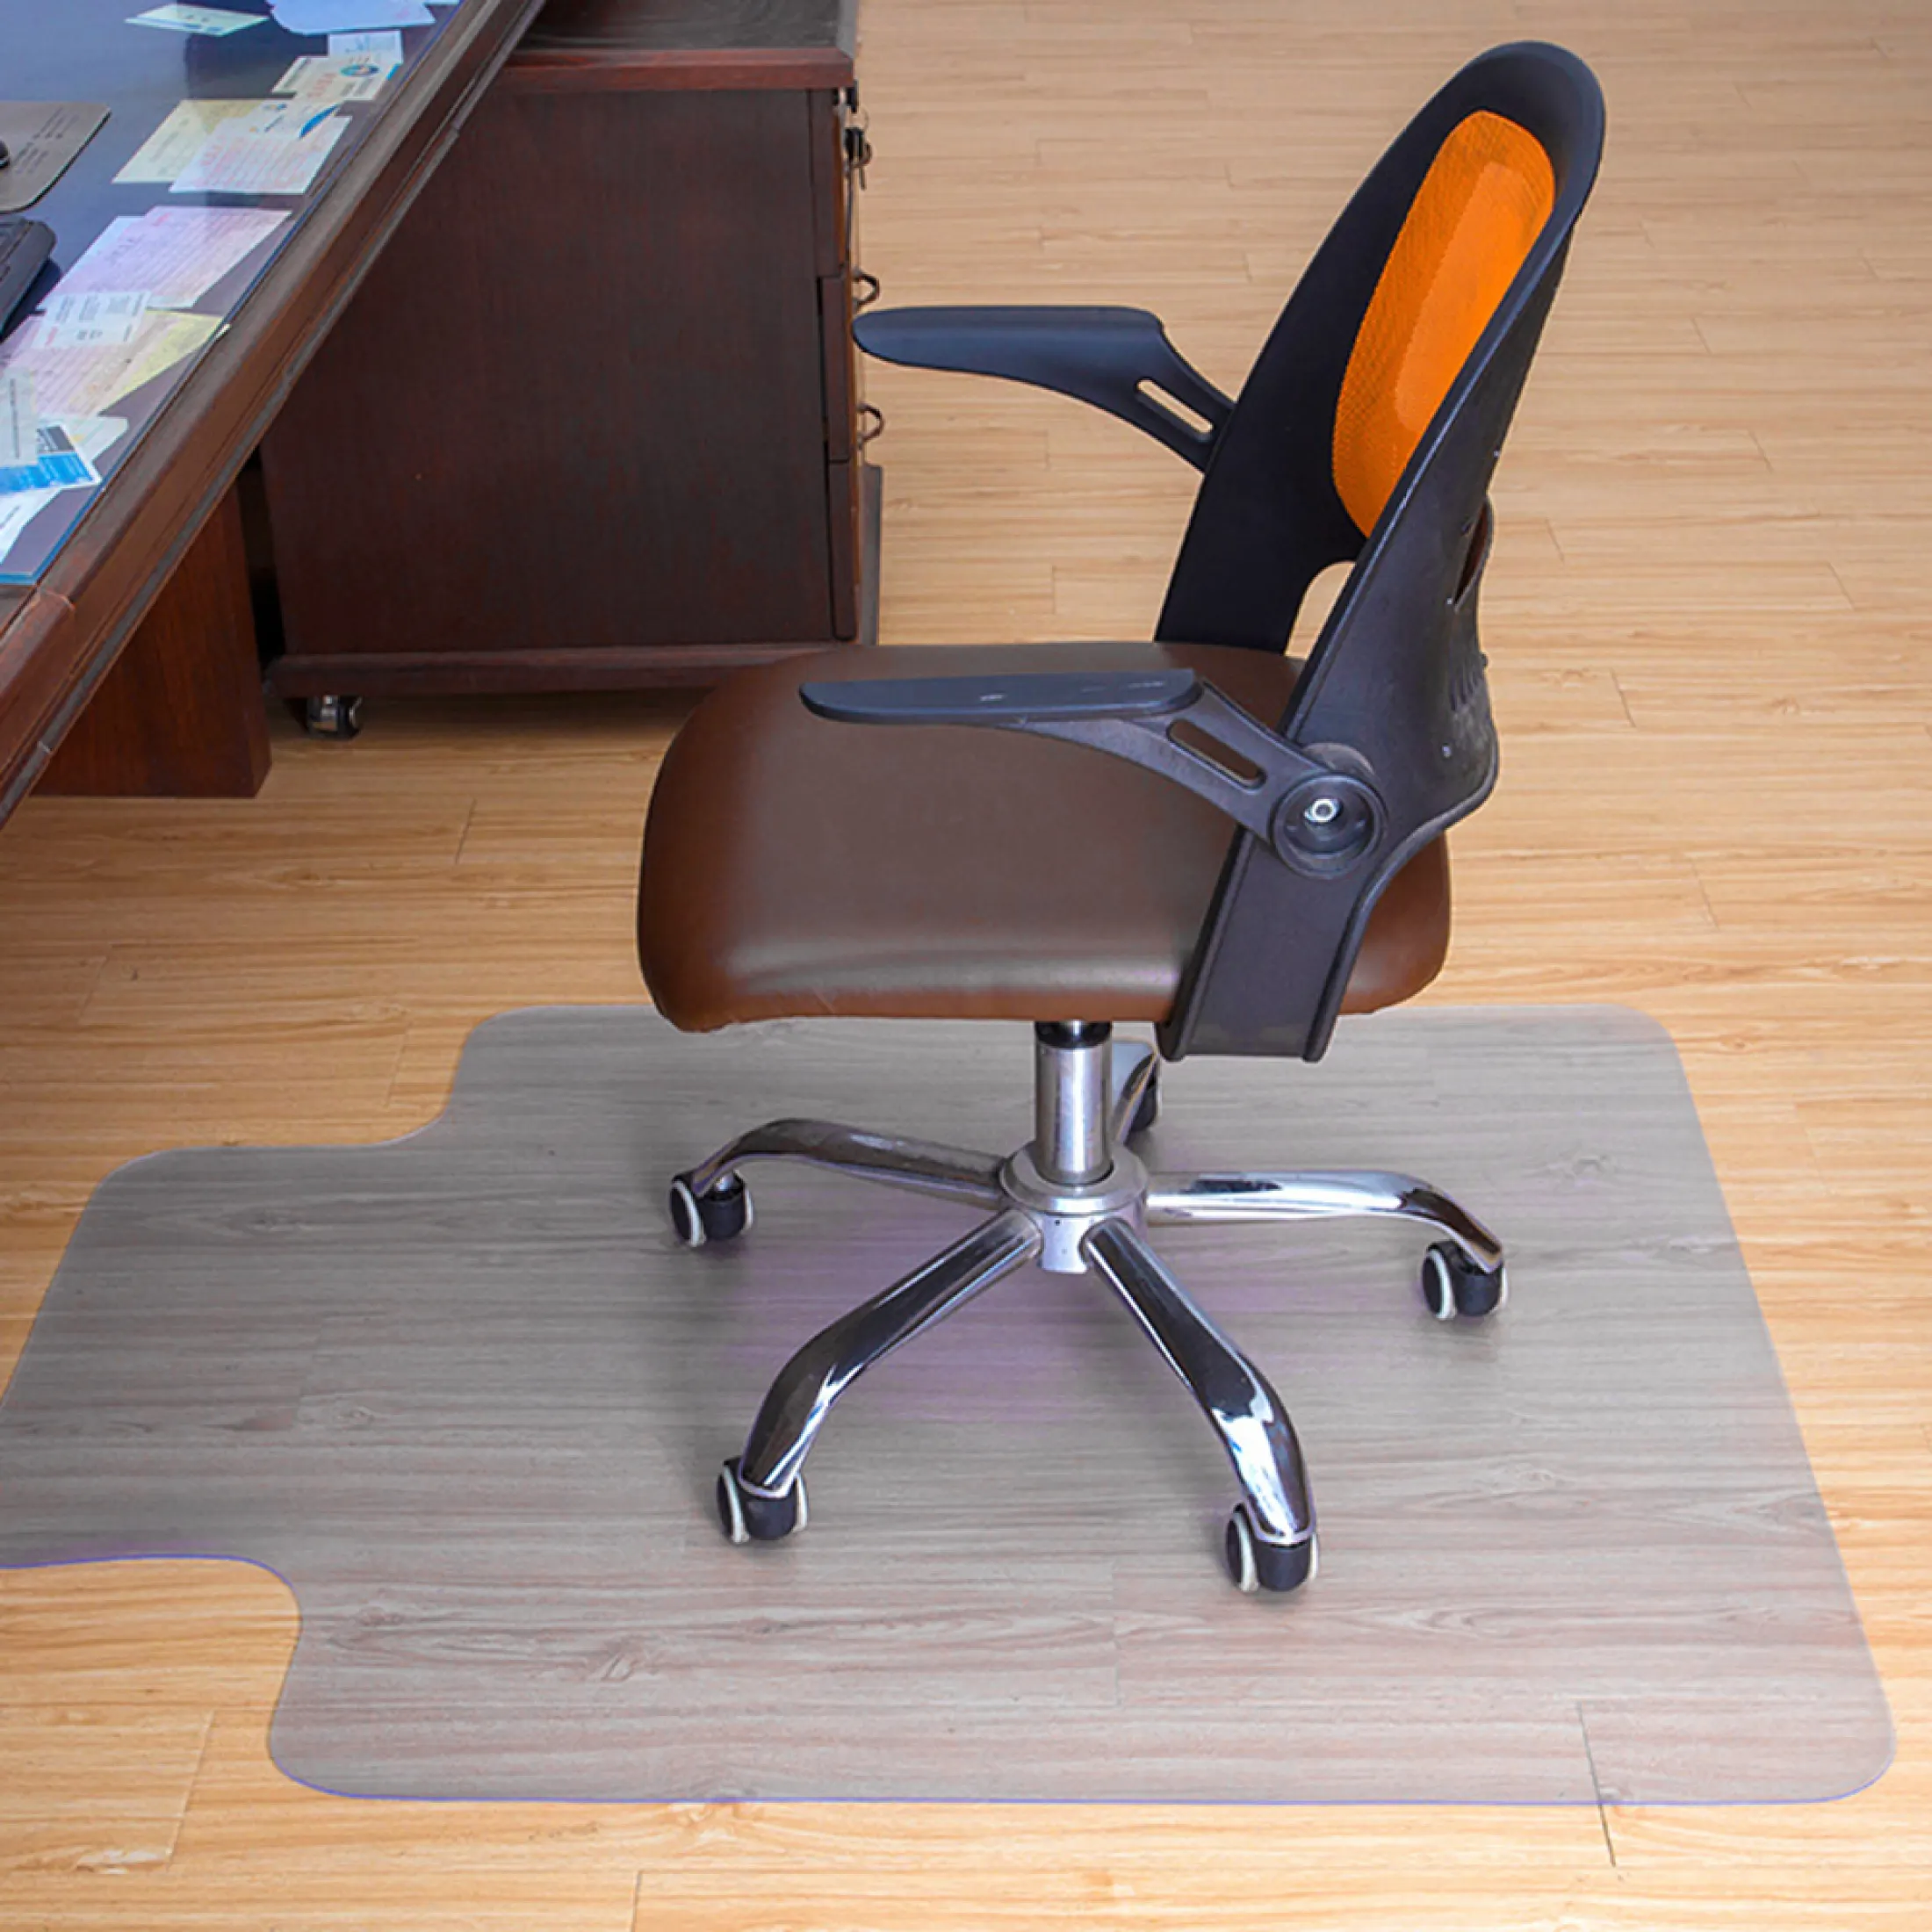 Rego 60 120cm Office Chair Mat For, Chair Mat Slips On Hardwood Floor